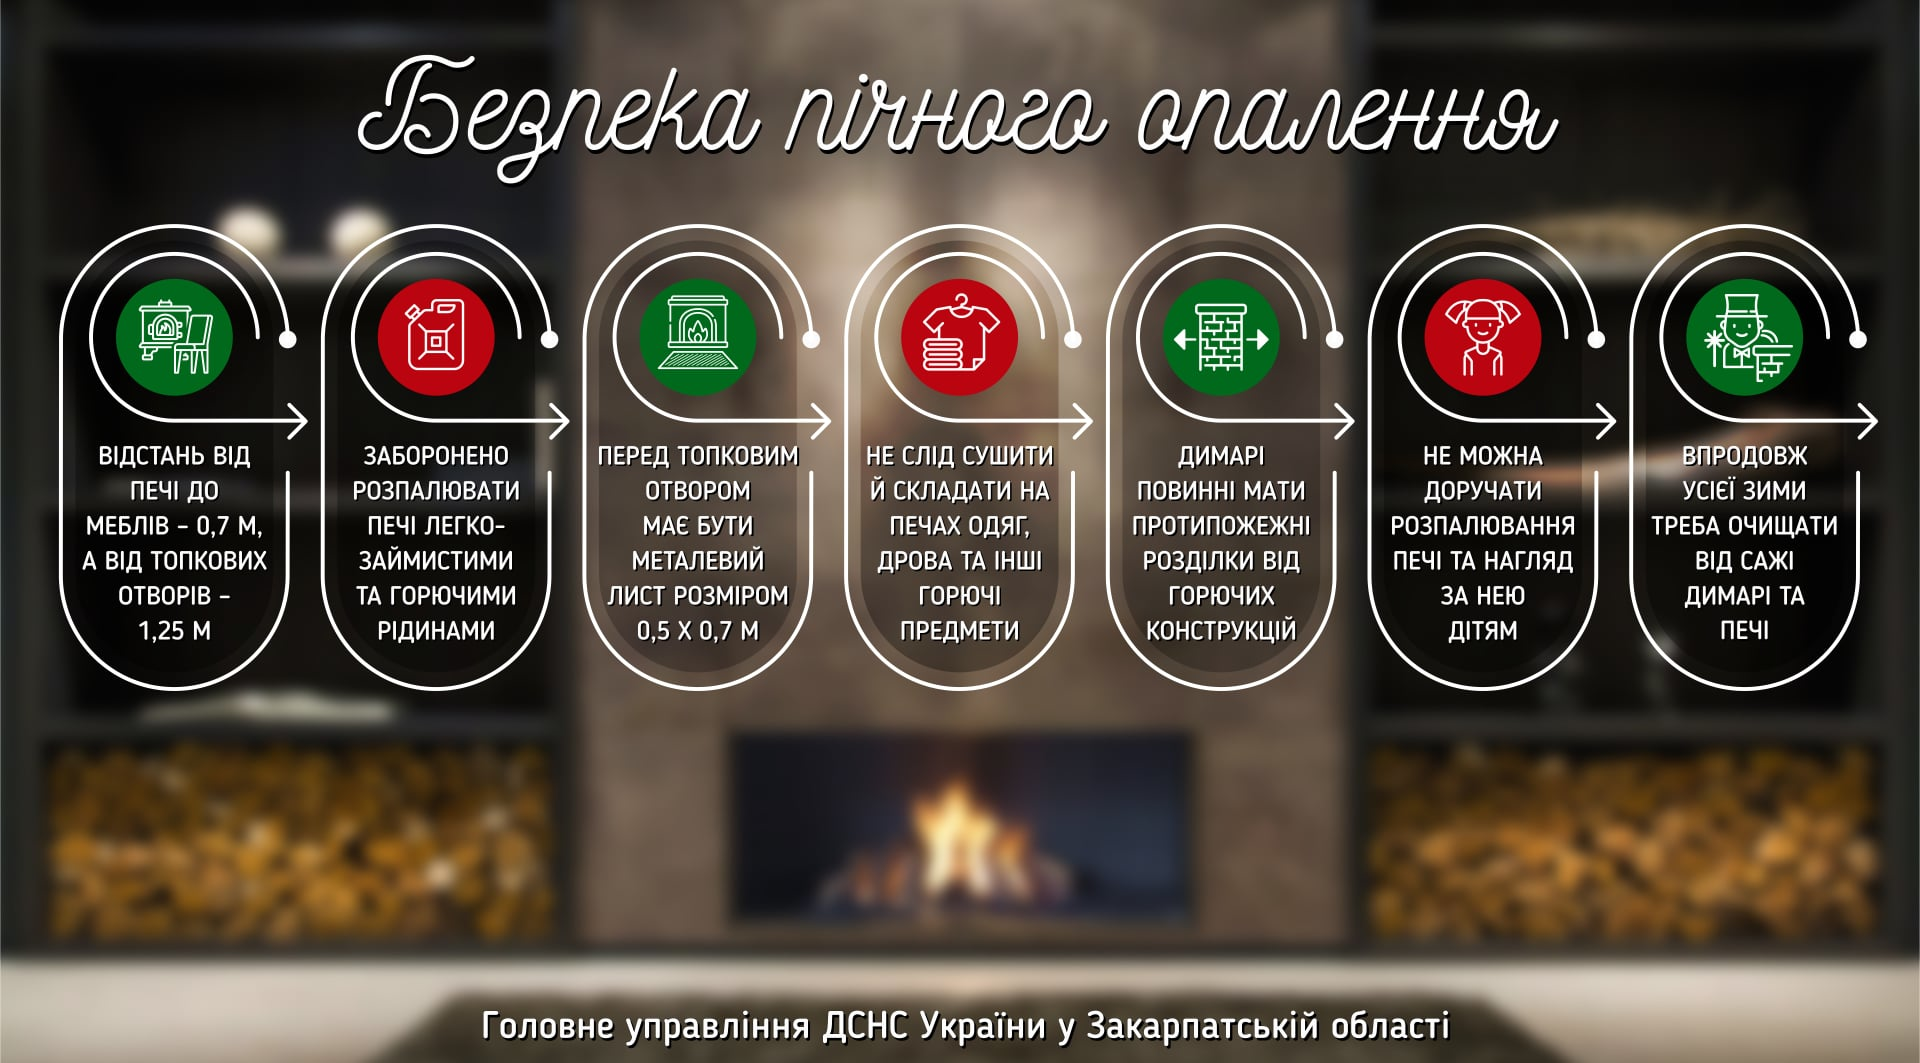 Как безопасно пользоваться печным отоплением (источник: ГСЧС Украины)